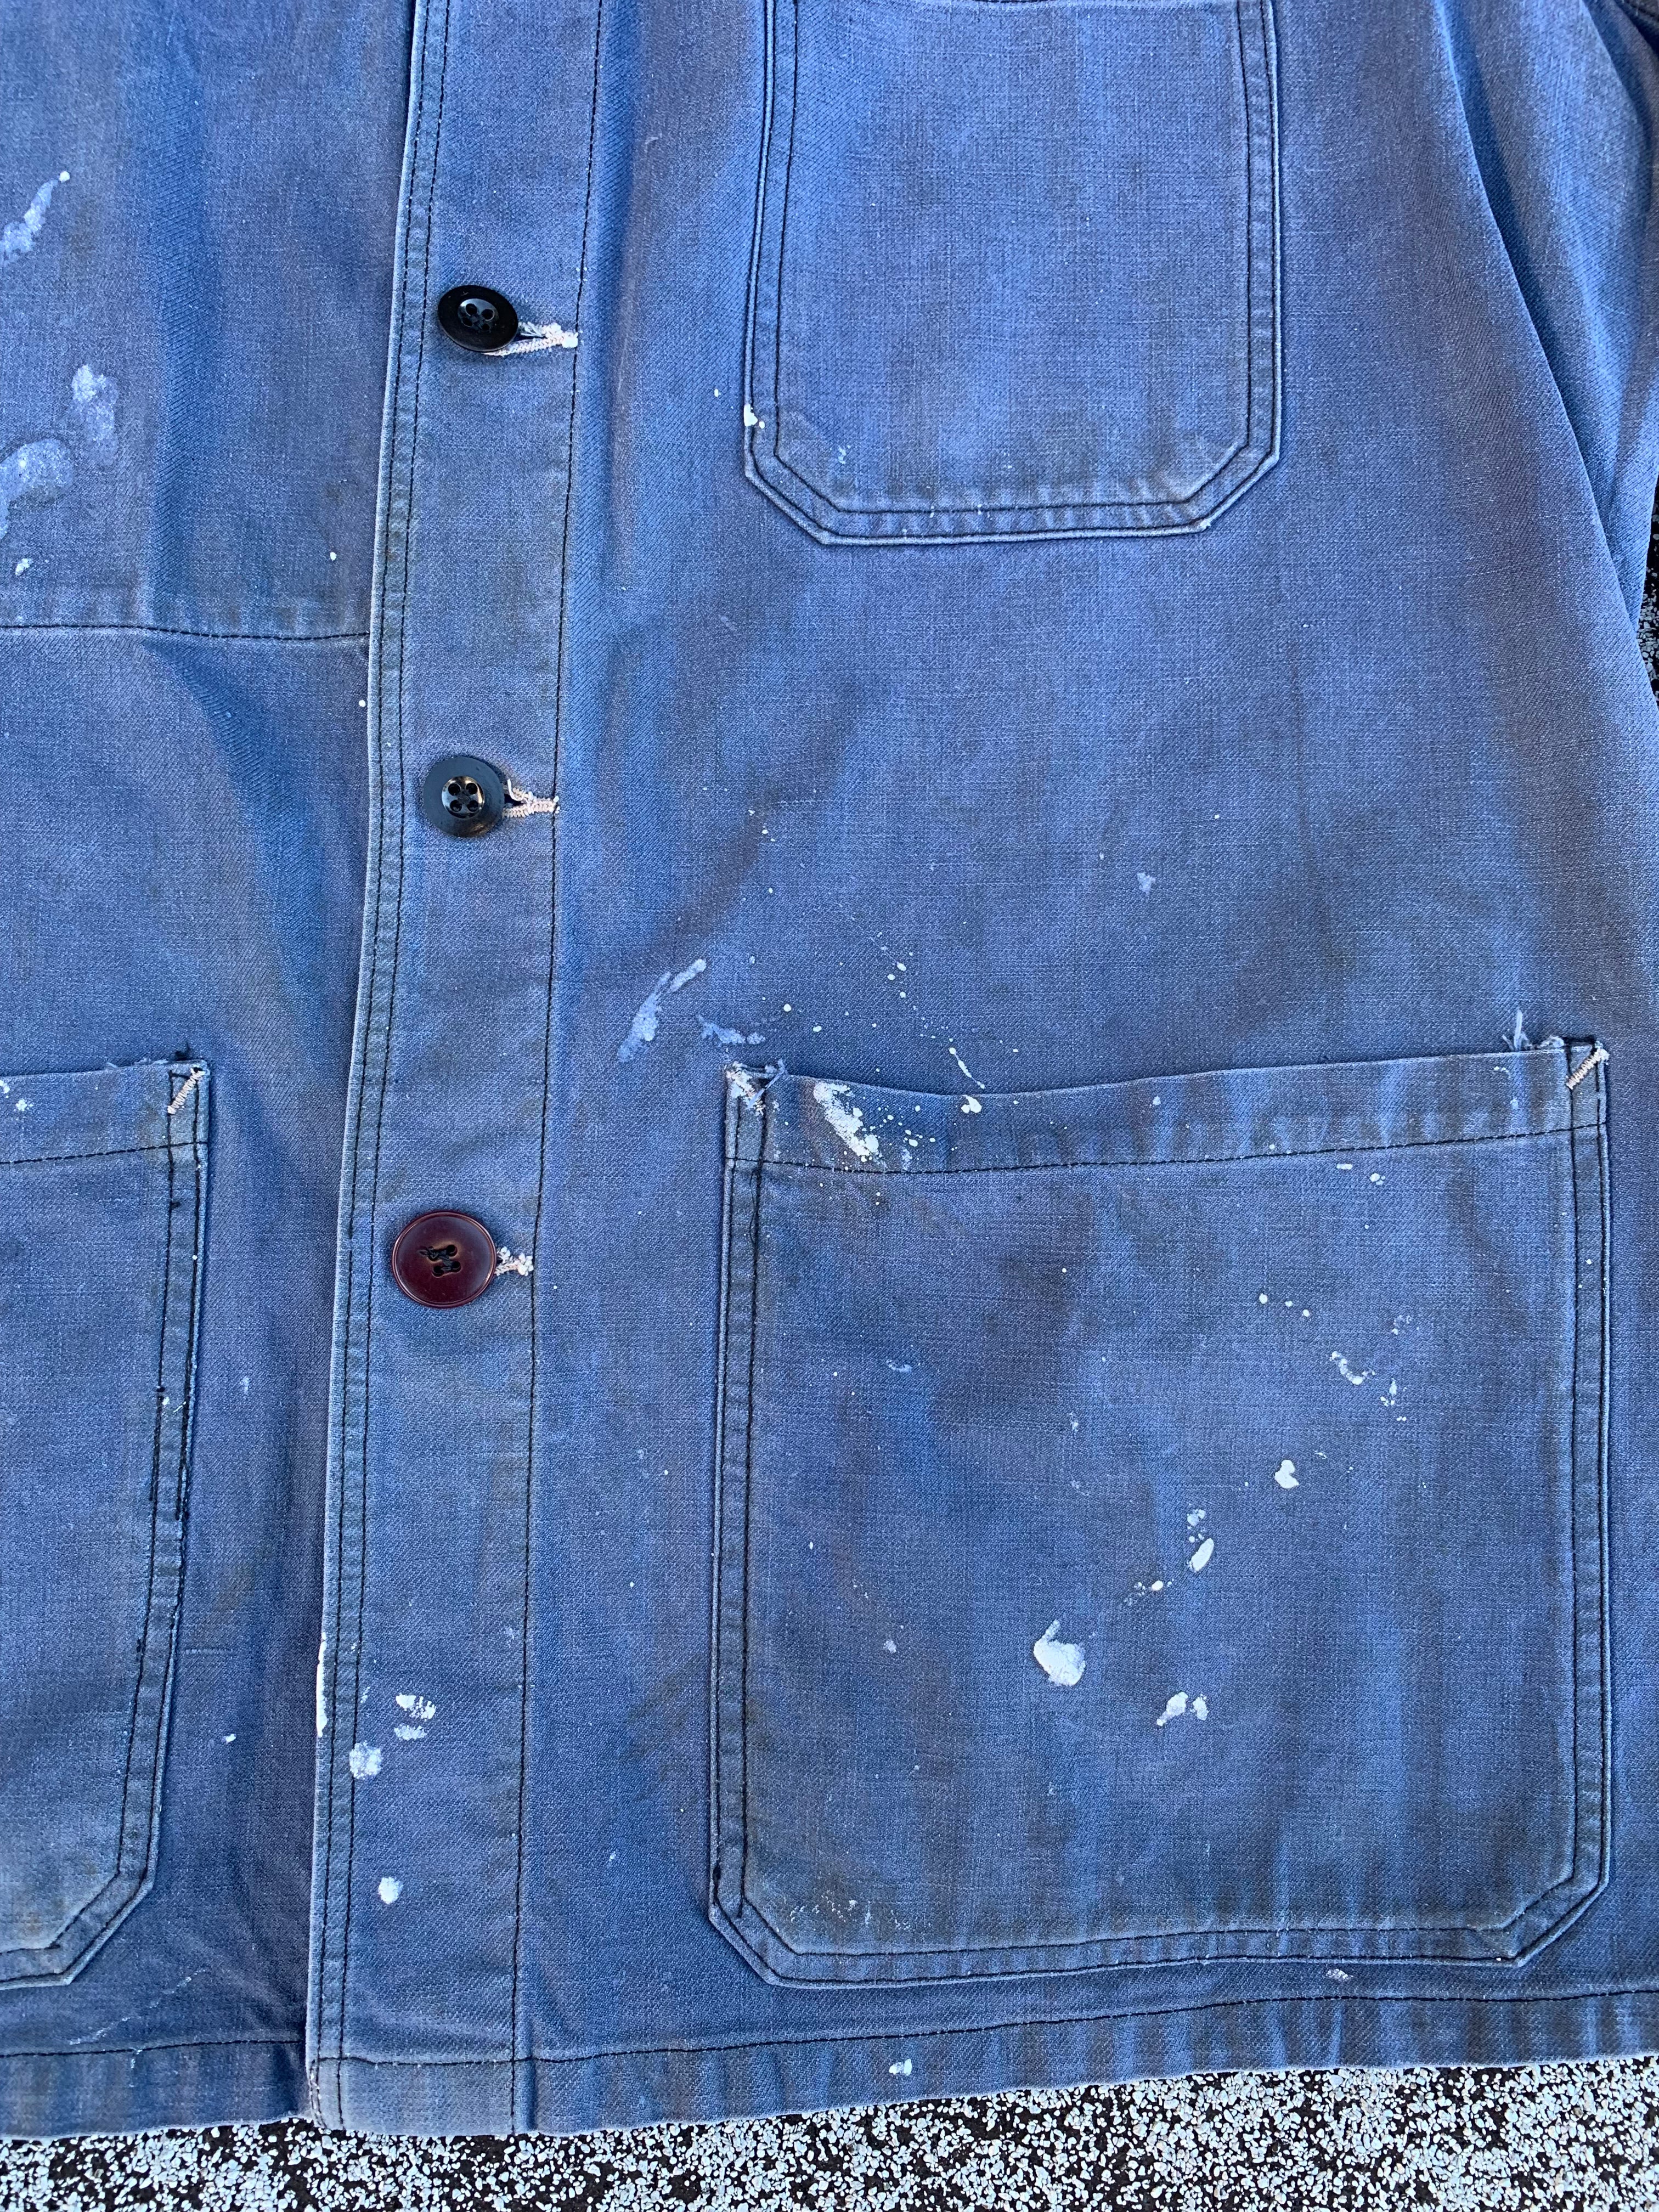 1960s Bleu De Travail French Chore Painter’s Jacket - Faded Blue - L/XL